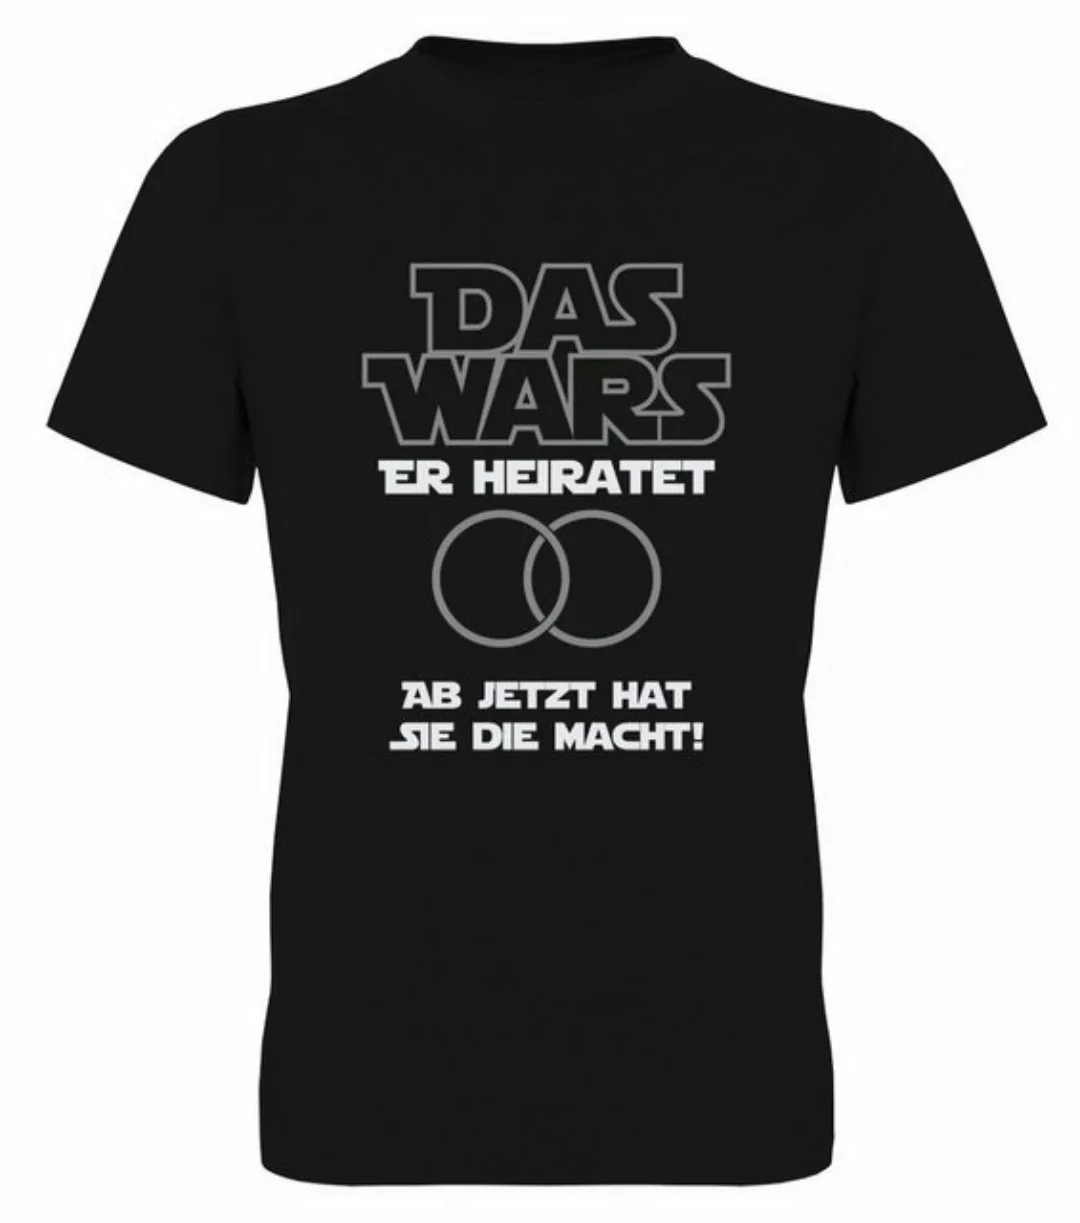 G-graphics T-Shirt Herren T-Shirt - Das Wars - Er heiratet – Ab jetzt hat s günstig online kaufen